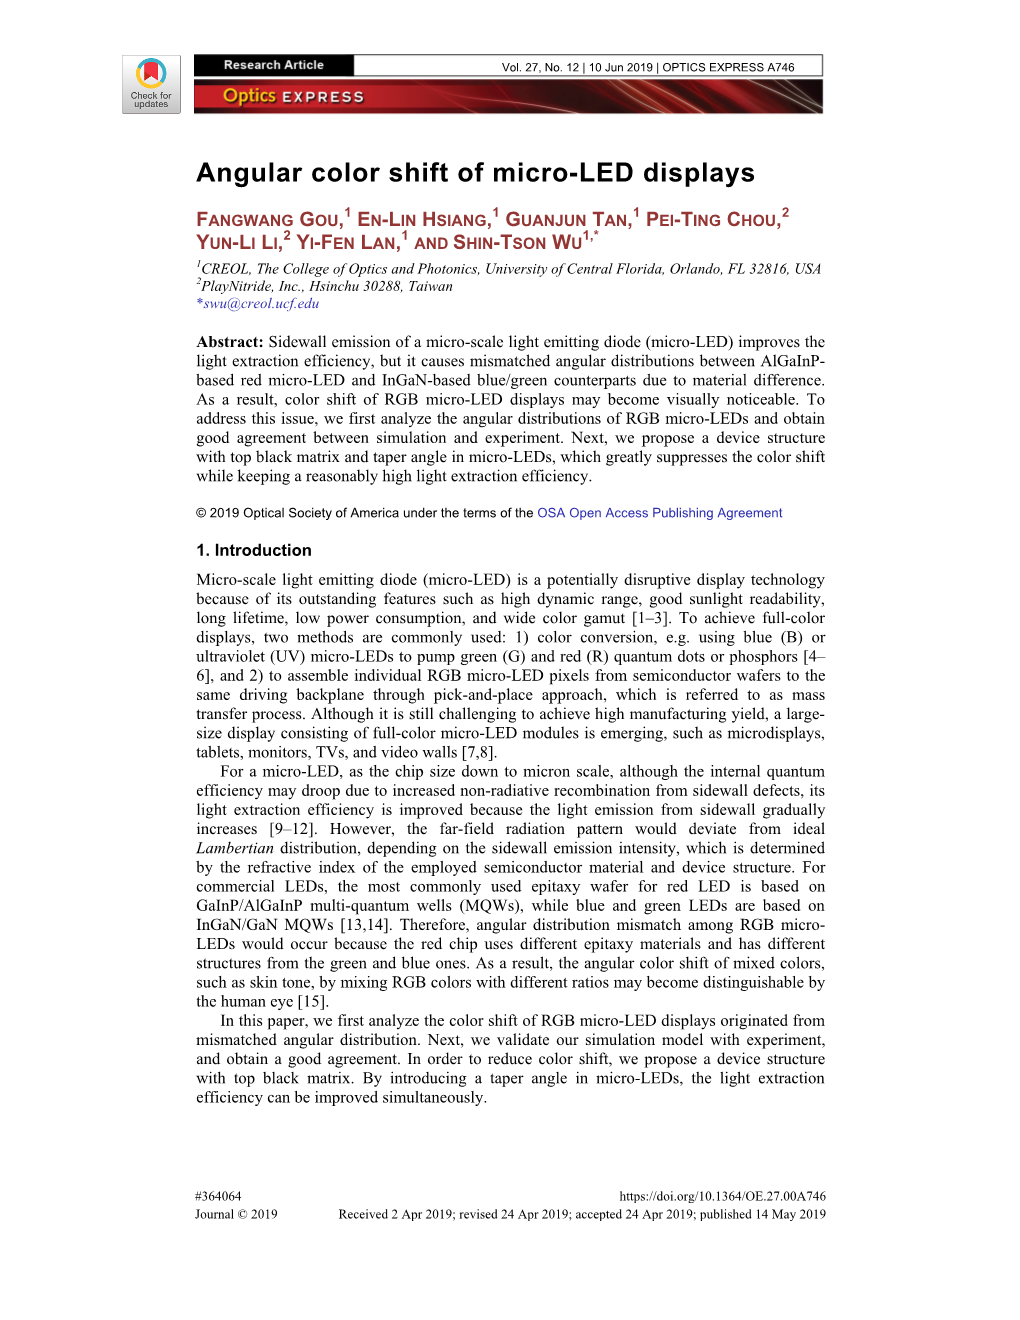 Angular Color Shift of Micro-LED Displays